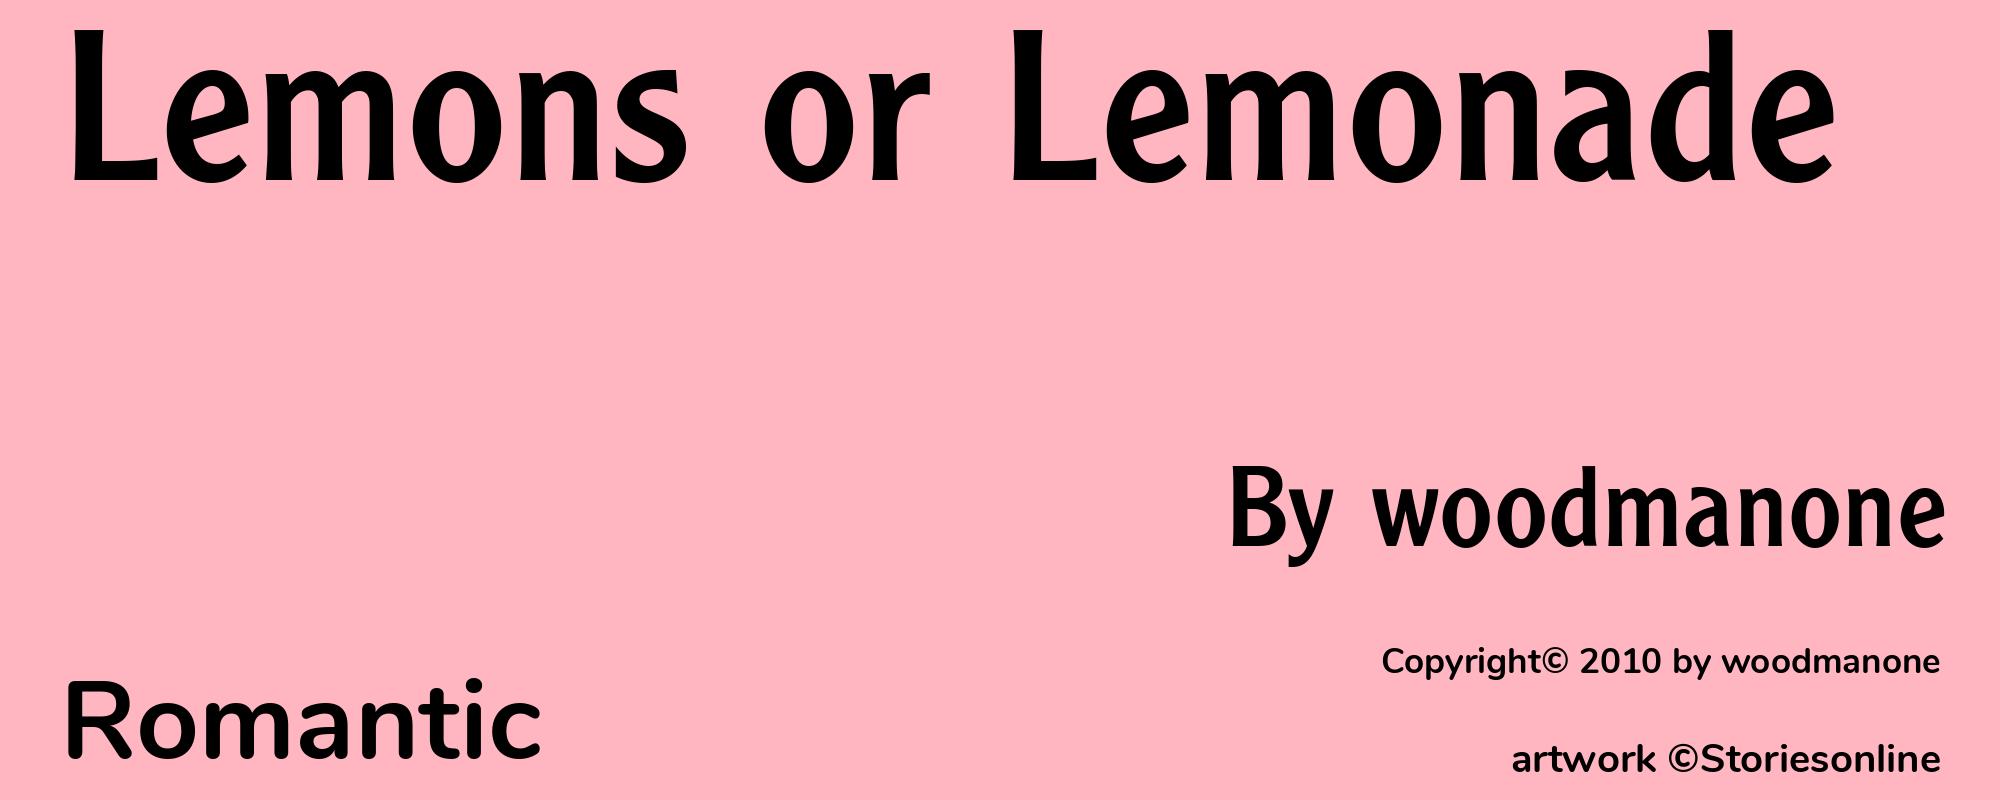 Lemons or Lemonade - Cover